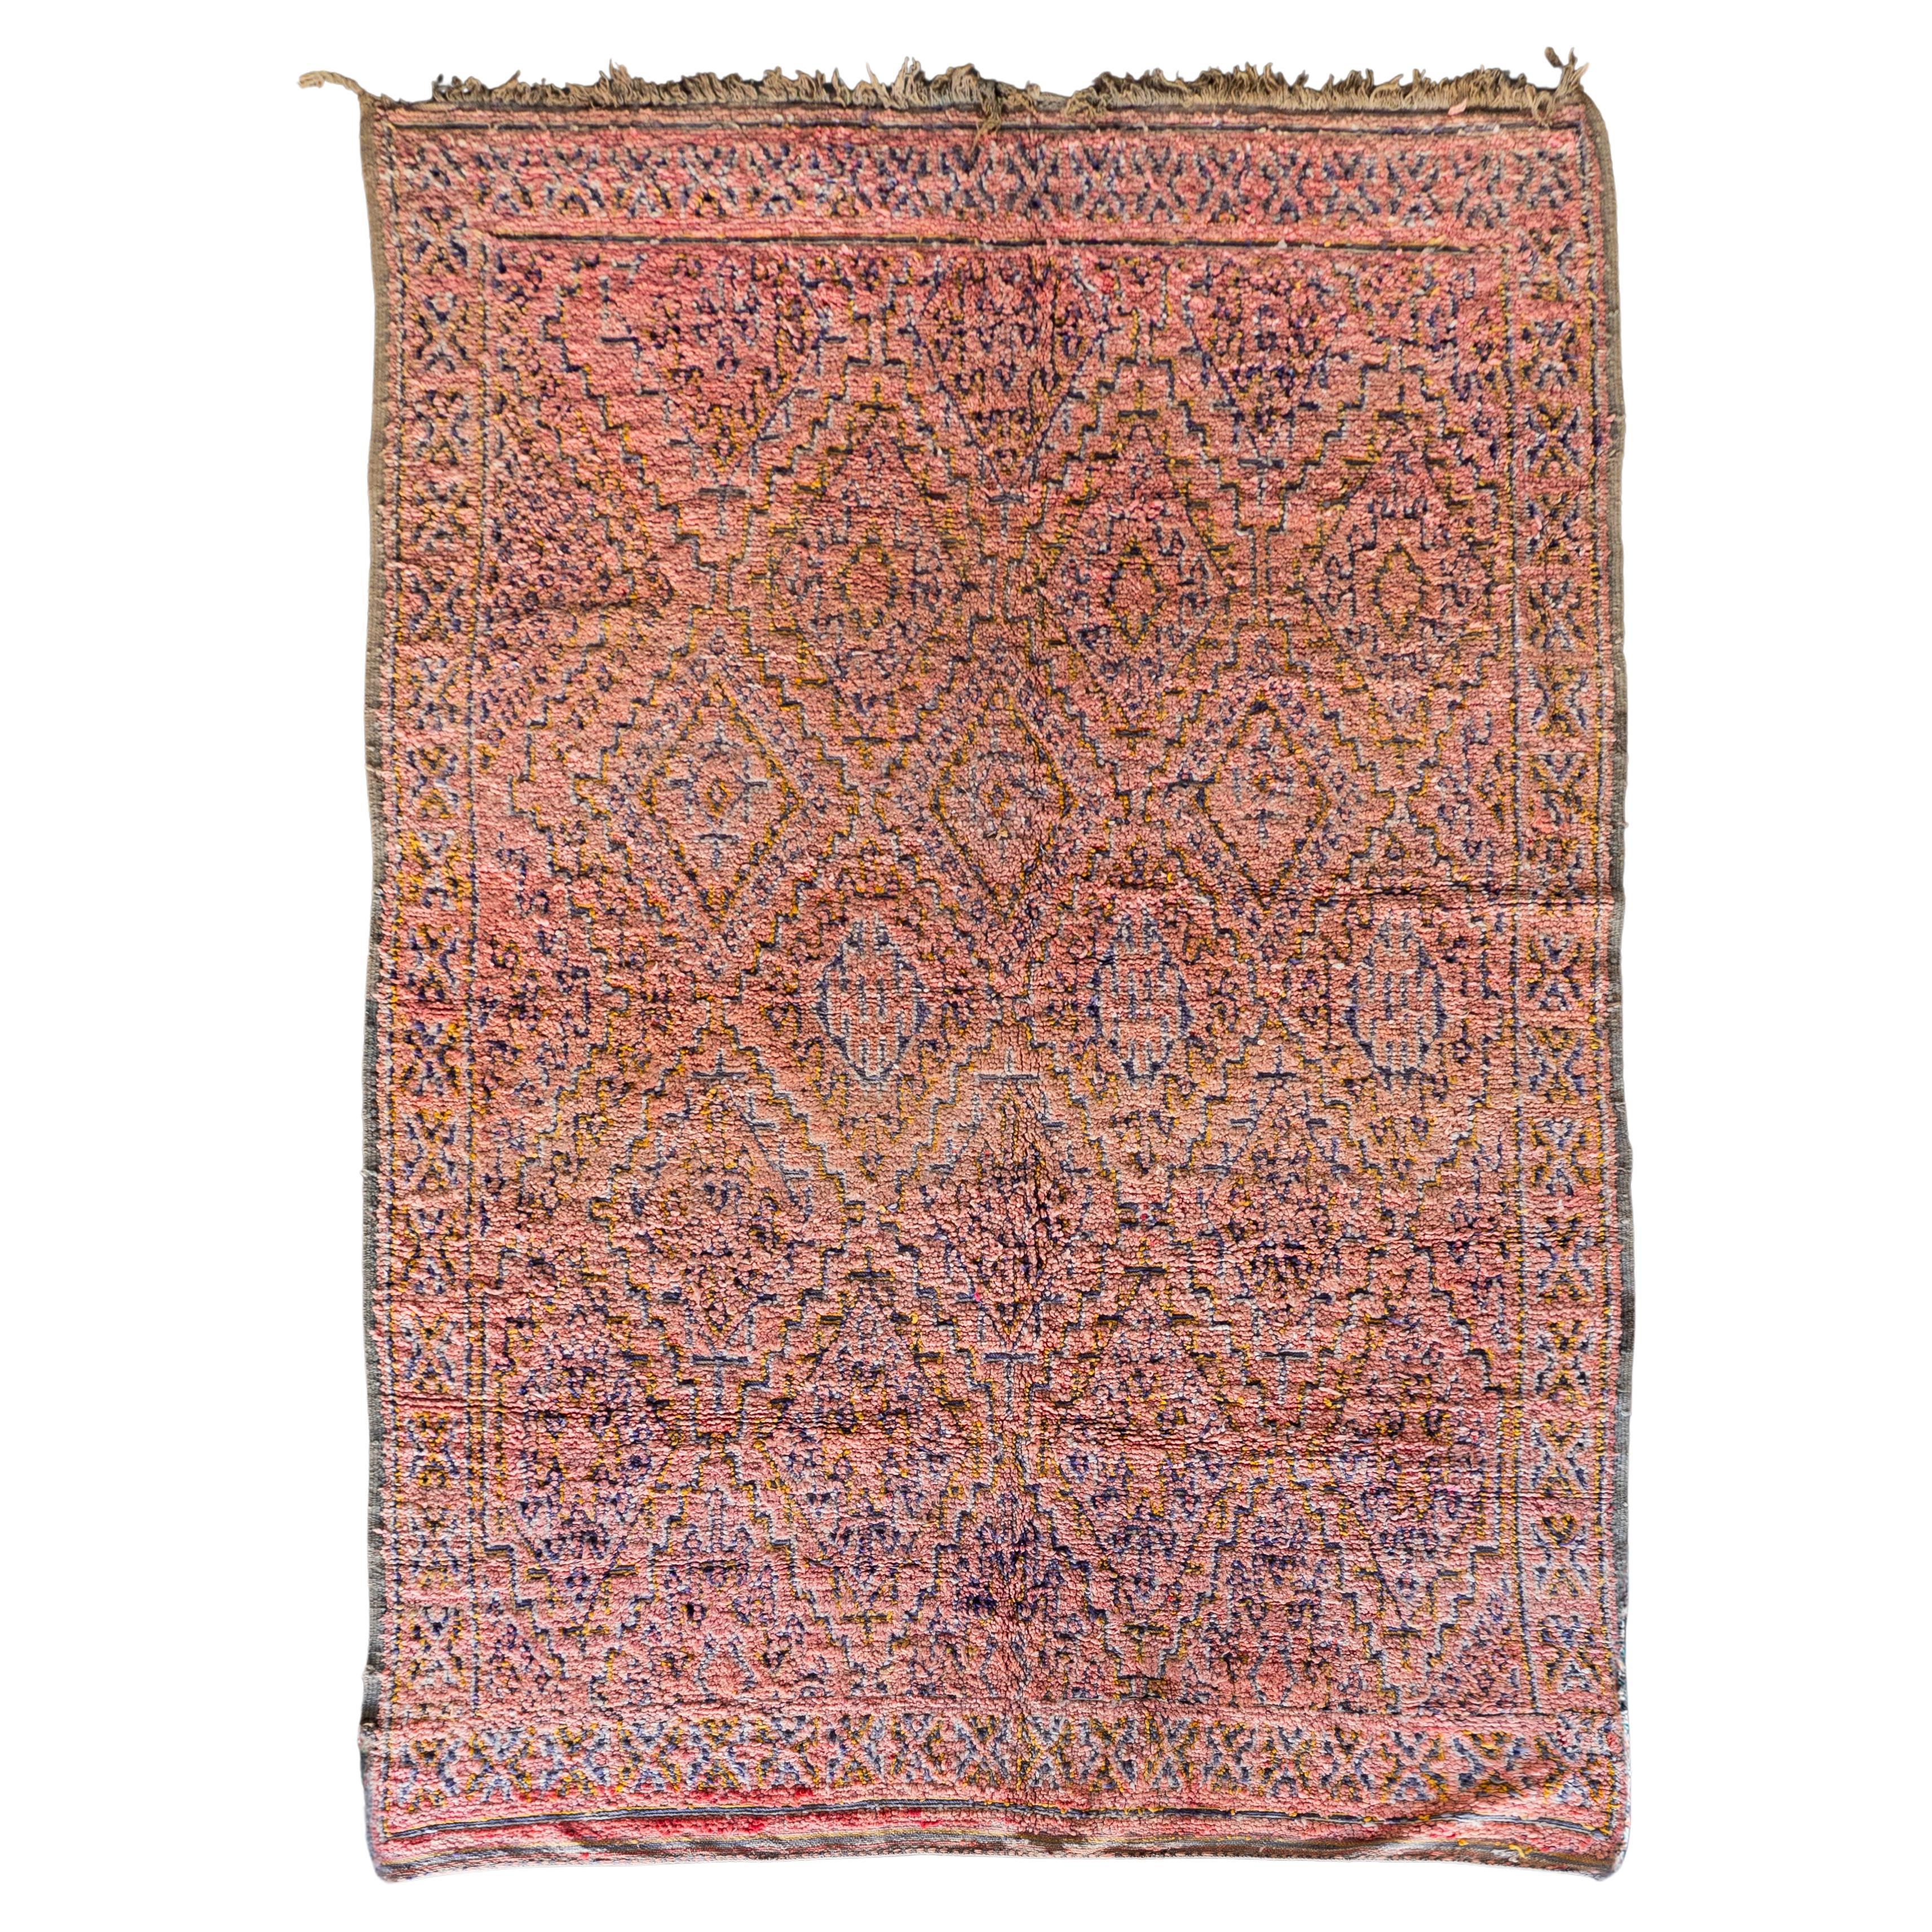 Tapis berbère marocain unique des années 70  100% laine 7,3 x 8,2 Ft 223 x 250 cm